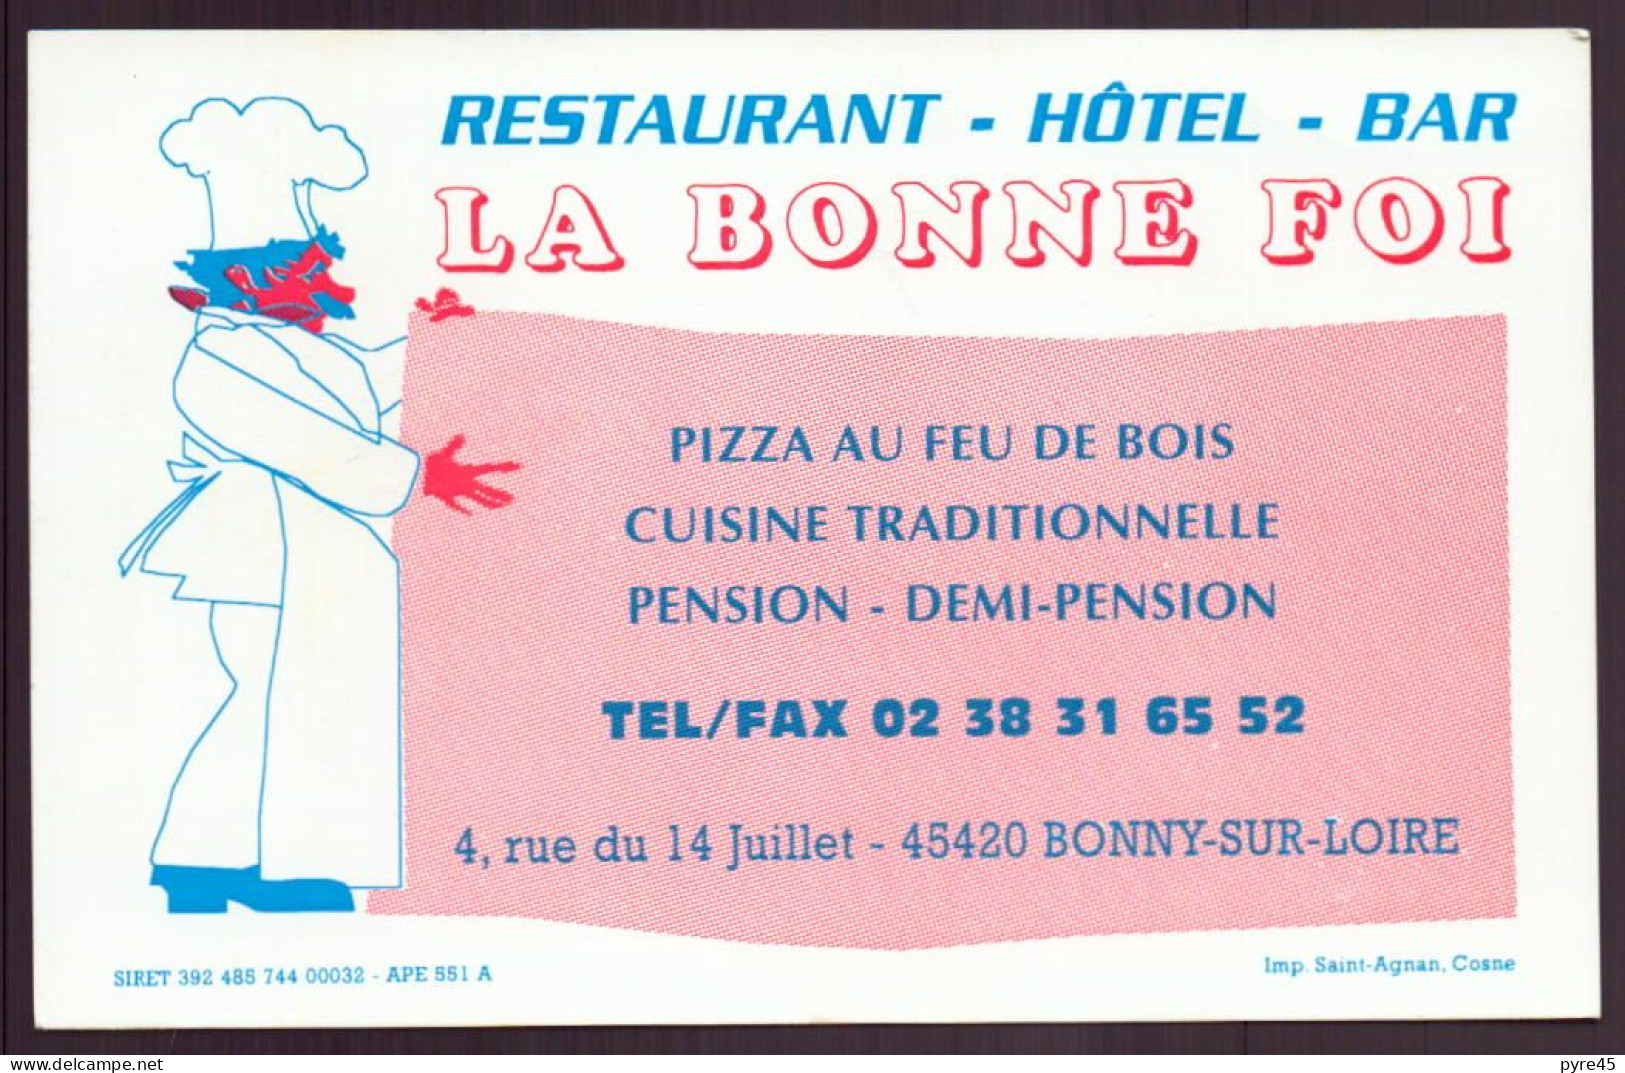 CARTE PUBLICITAIRE LA BONNE FOI A BONNY SUR LOIRE RESTAURANT HOTEL BAR - Cartoncini Da Visita